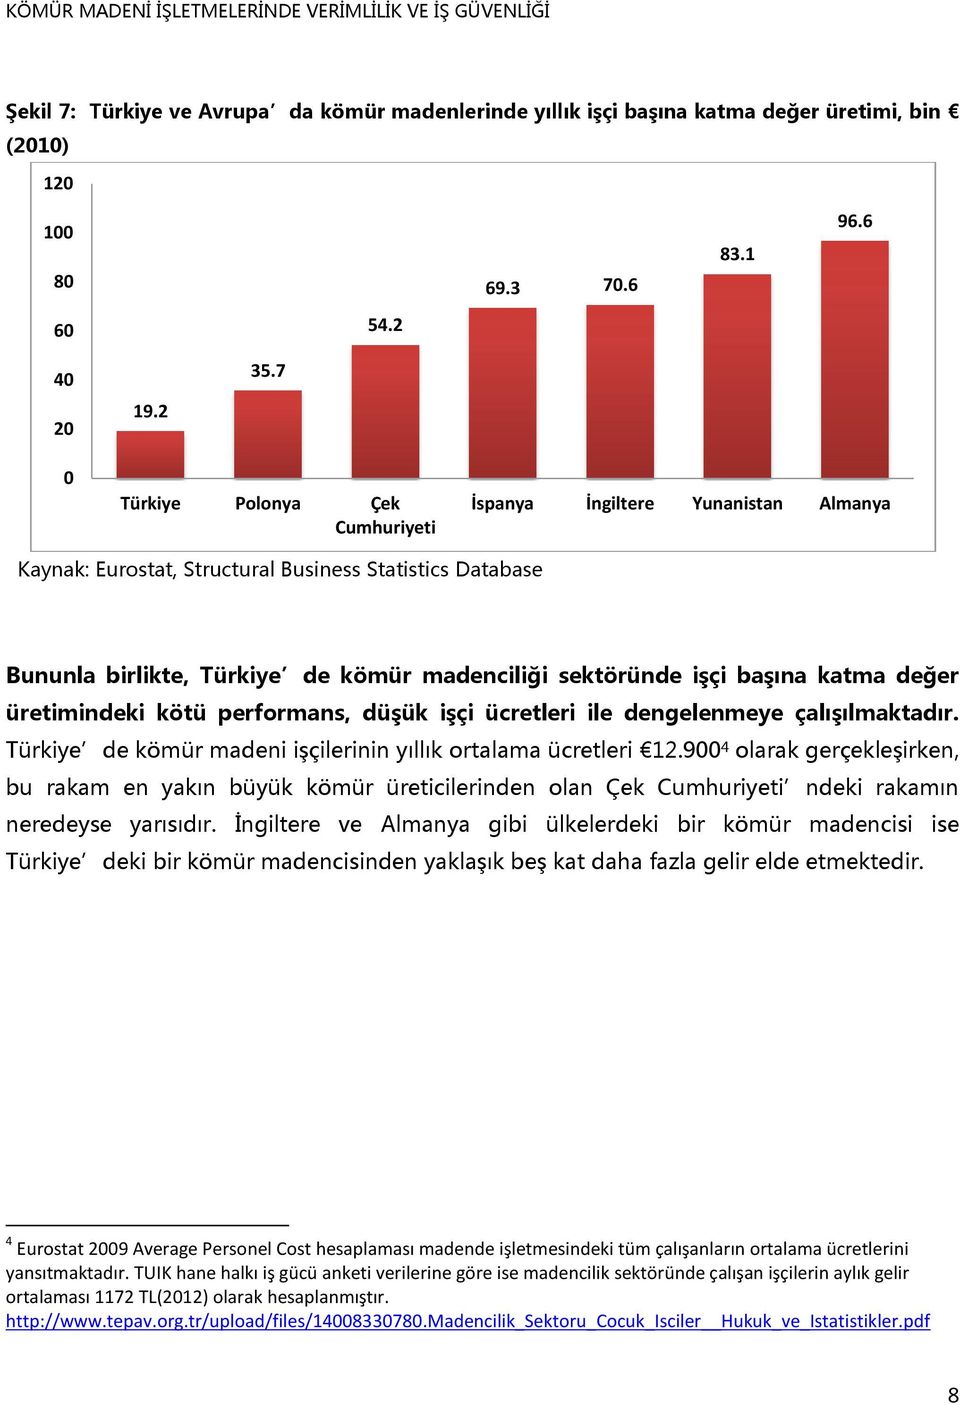 katma değer üretimindeki kötü performans, düşük işçi ücretleri ile dengelenmeye çalışılmaktadır. Türkiye de kömür madeni işçilerinin yıllık ortalama ücretleri 12.